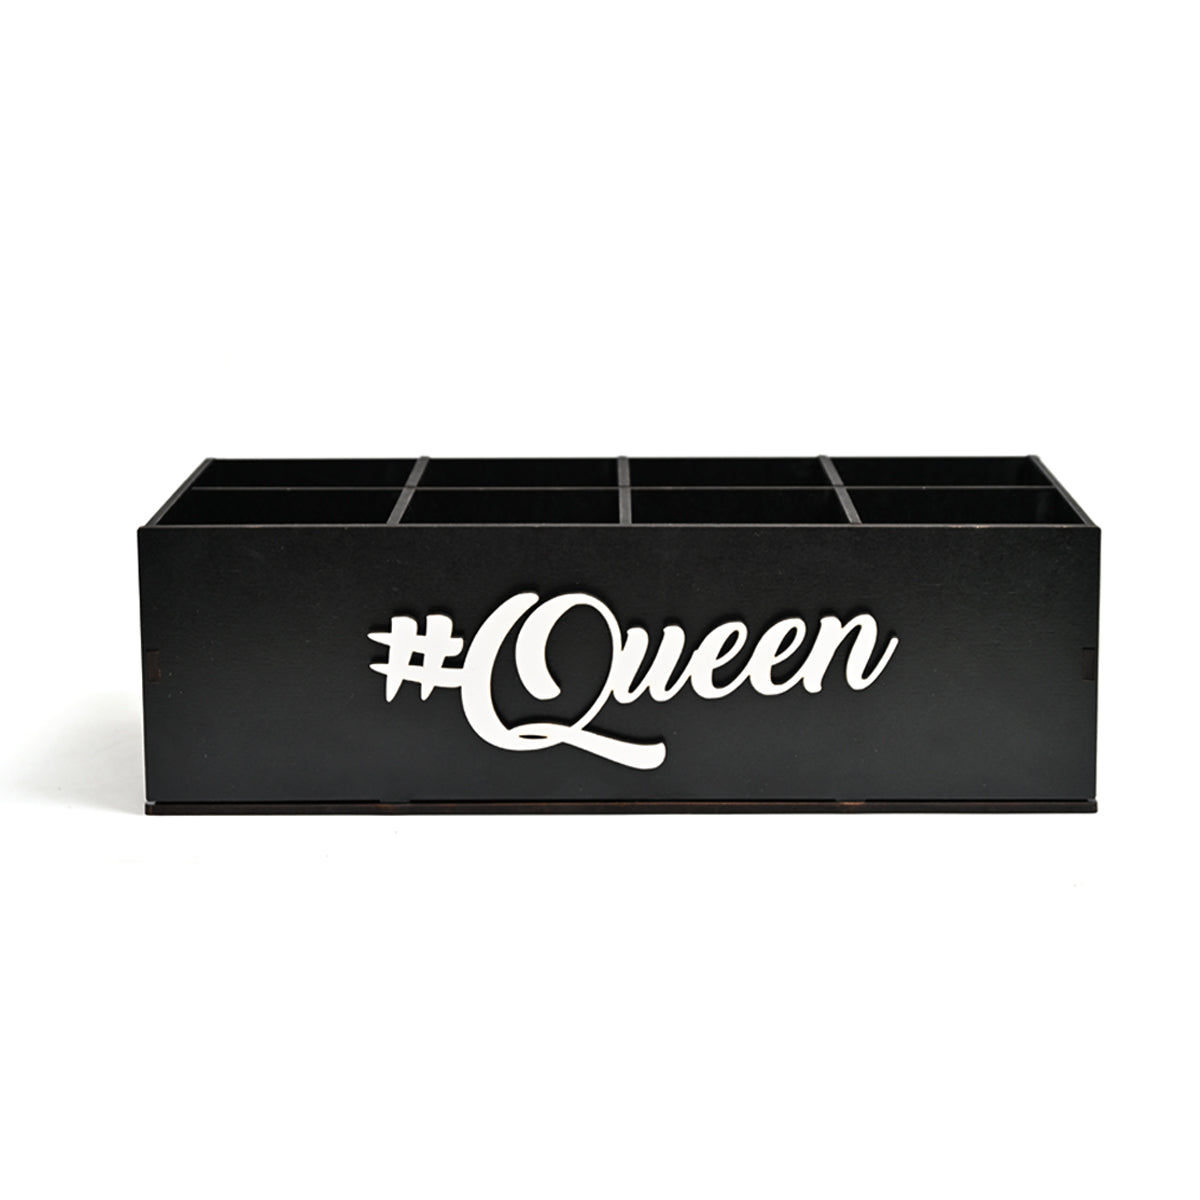 #queen - black